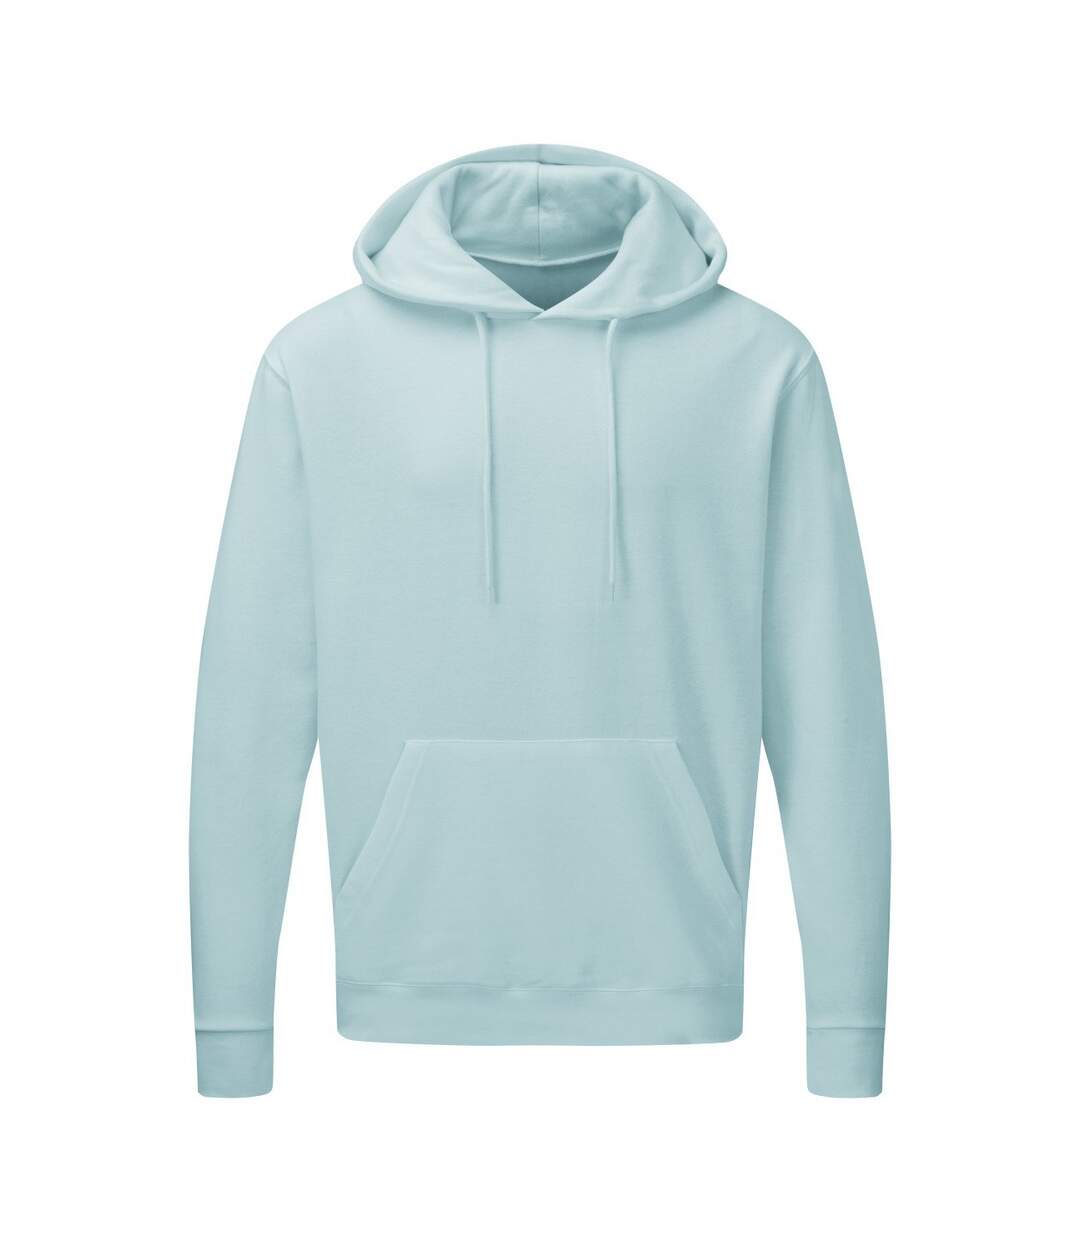 SG Mens Plain Hooded Sweatshirt Top / Hoodie / Sweatshirt (Angel Blue) - UTBC1072